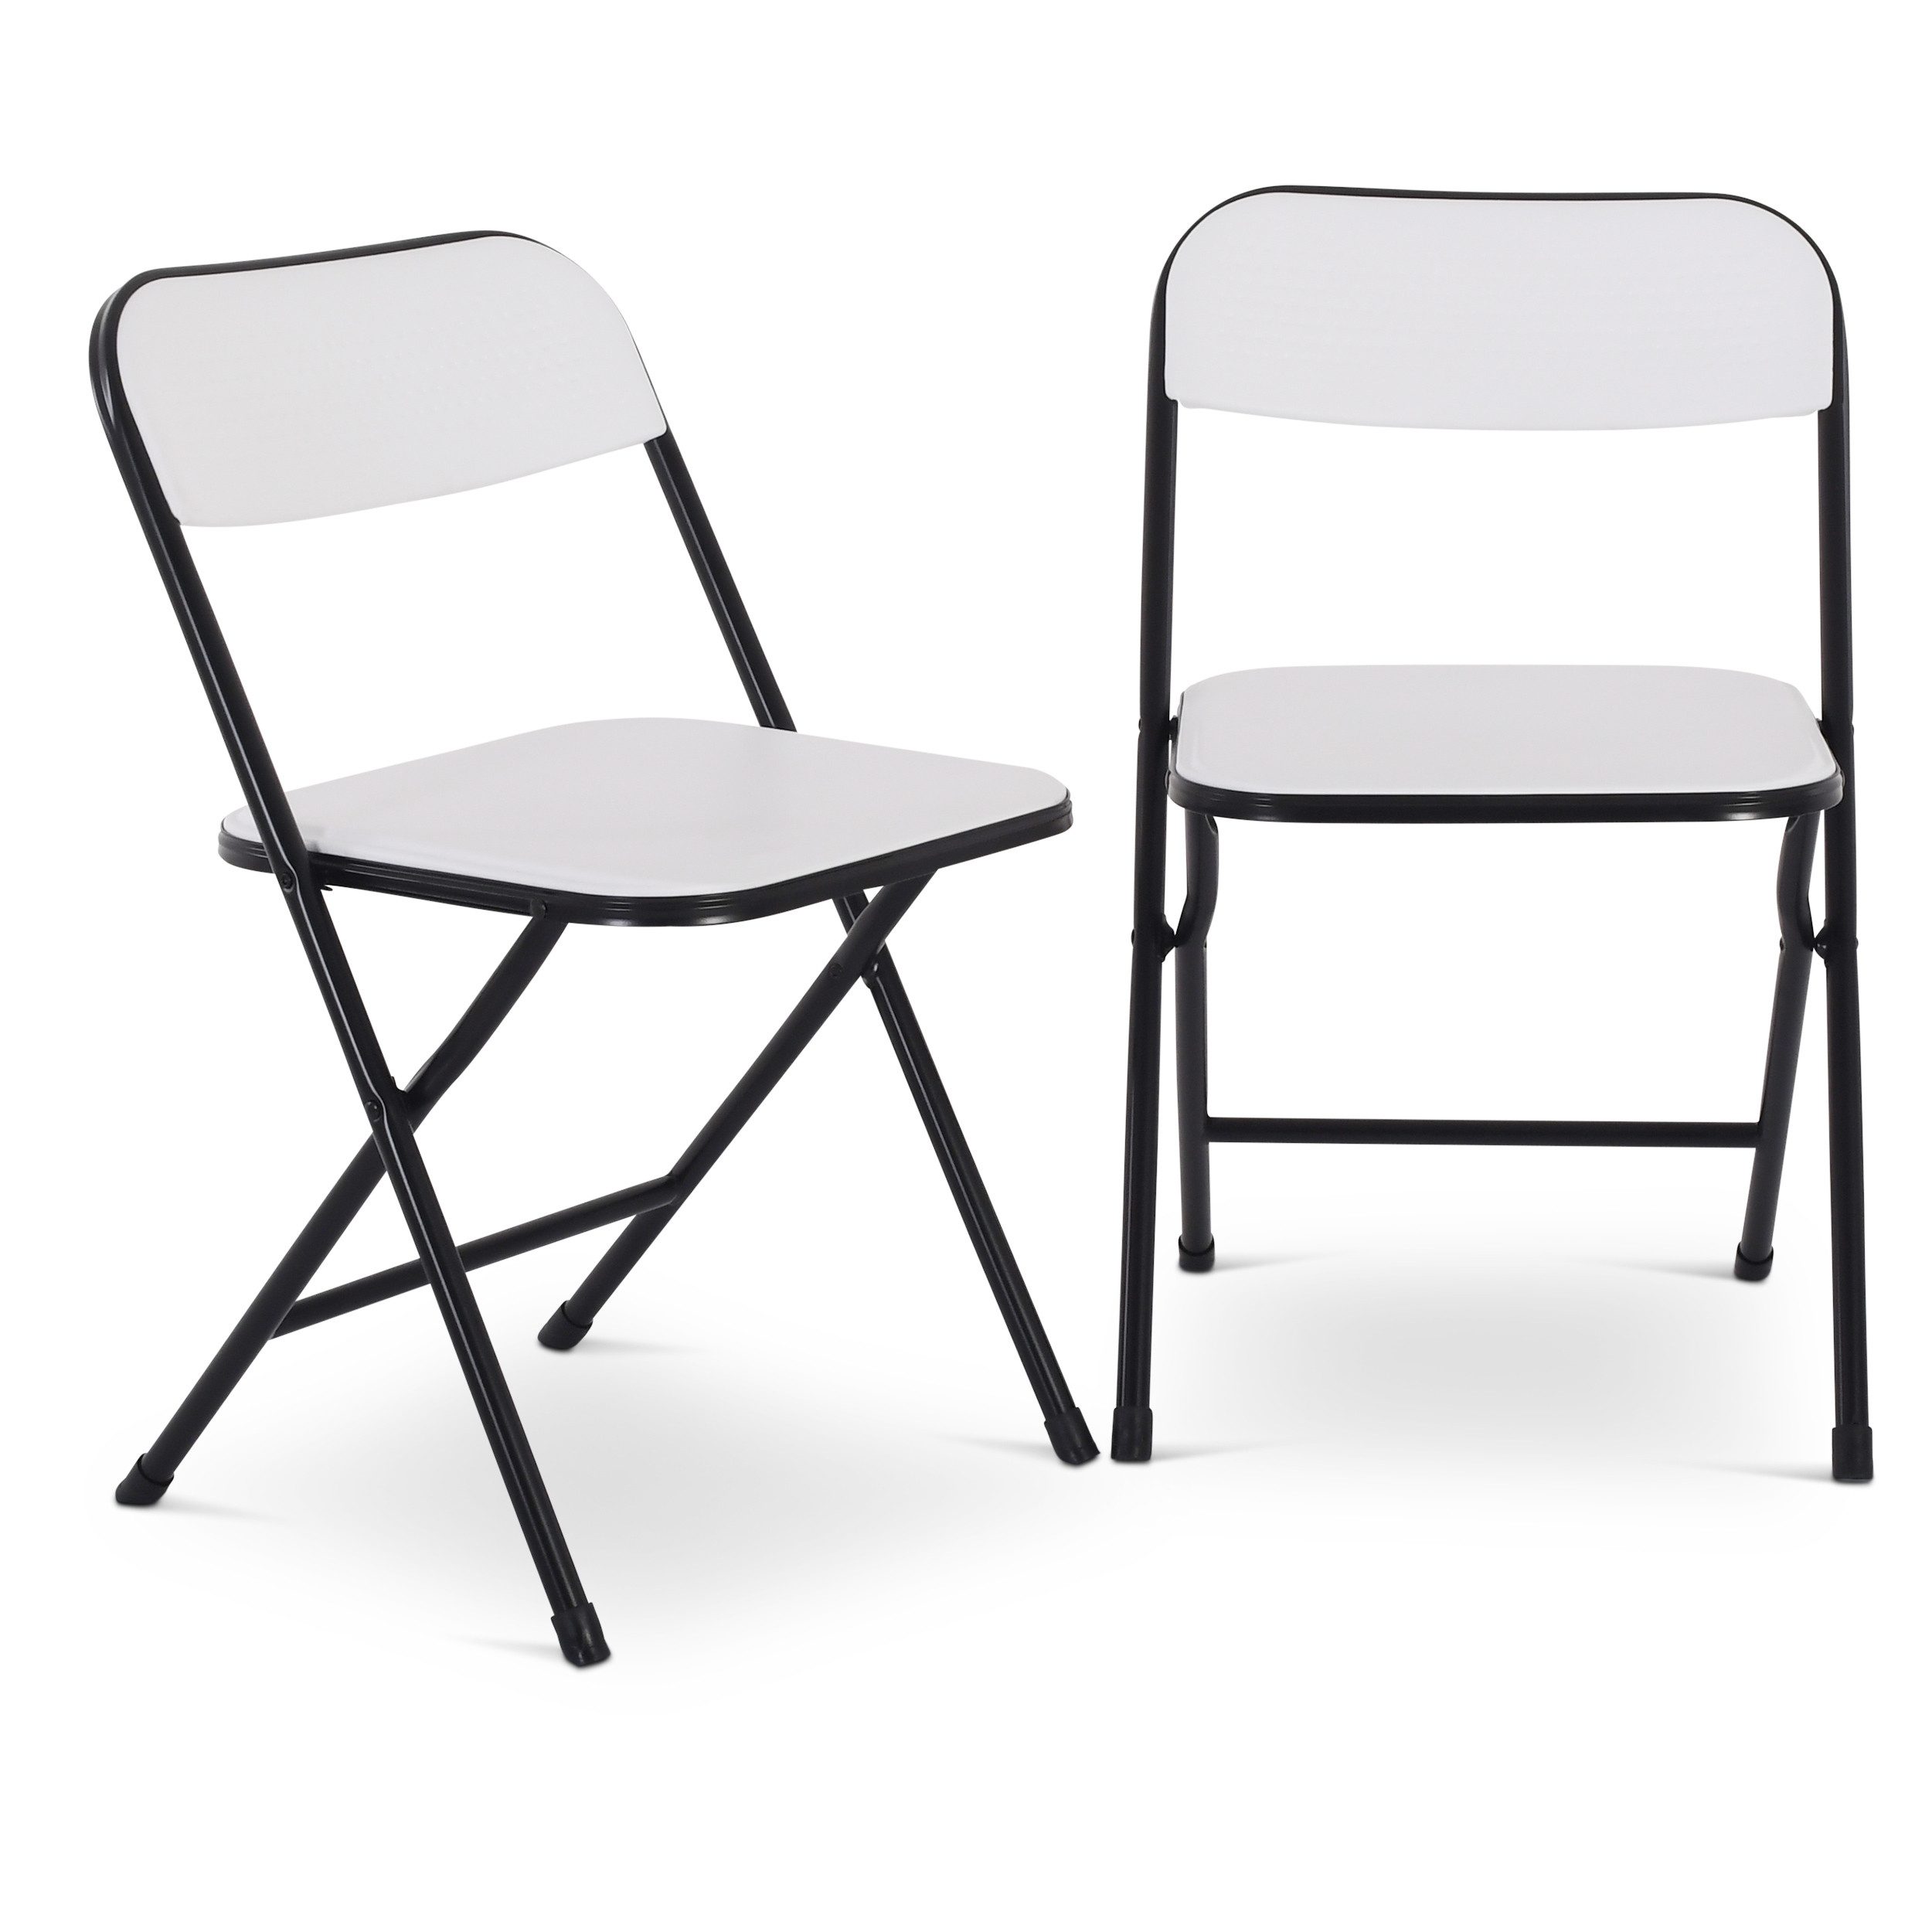 Raburg Klappstuhl Gästestuhl, klappbar, stabiles Metallgestell mit Kunststoff, Jonas (2er-Set), für Indoor und Outdoor, Belastbarkeit 110 kg pro Stuhl